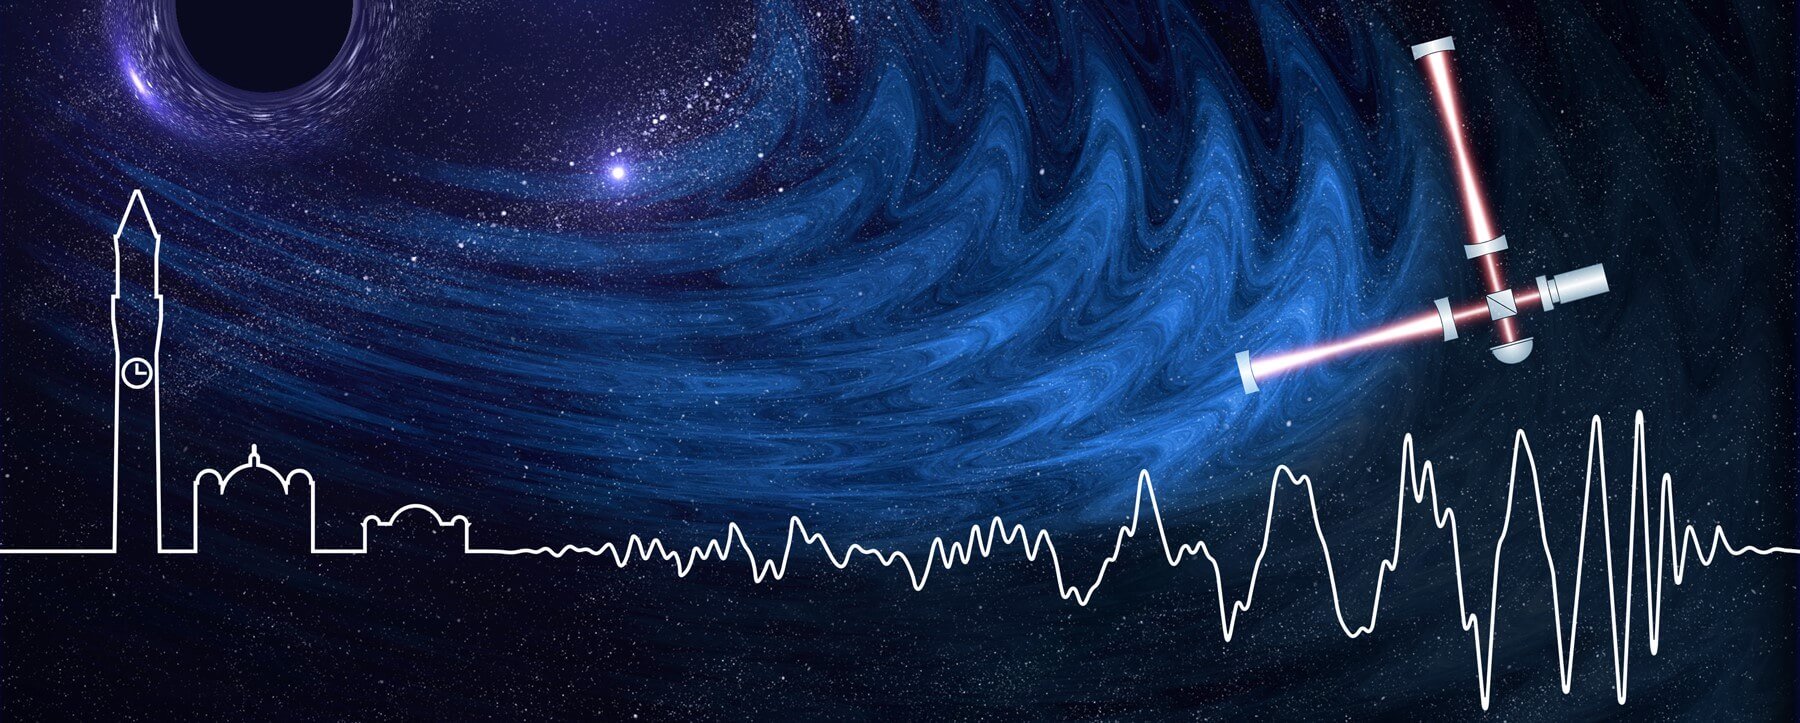 Physik verzeichnete Quanten-Rauschen im Labor LIGO – was muss ich wissen?